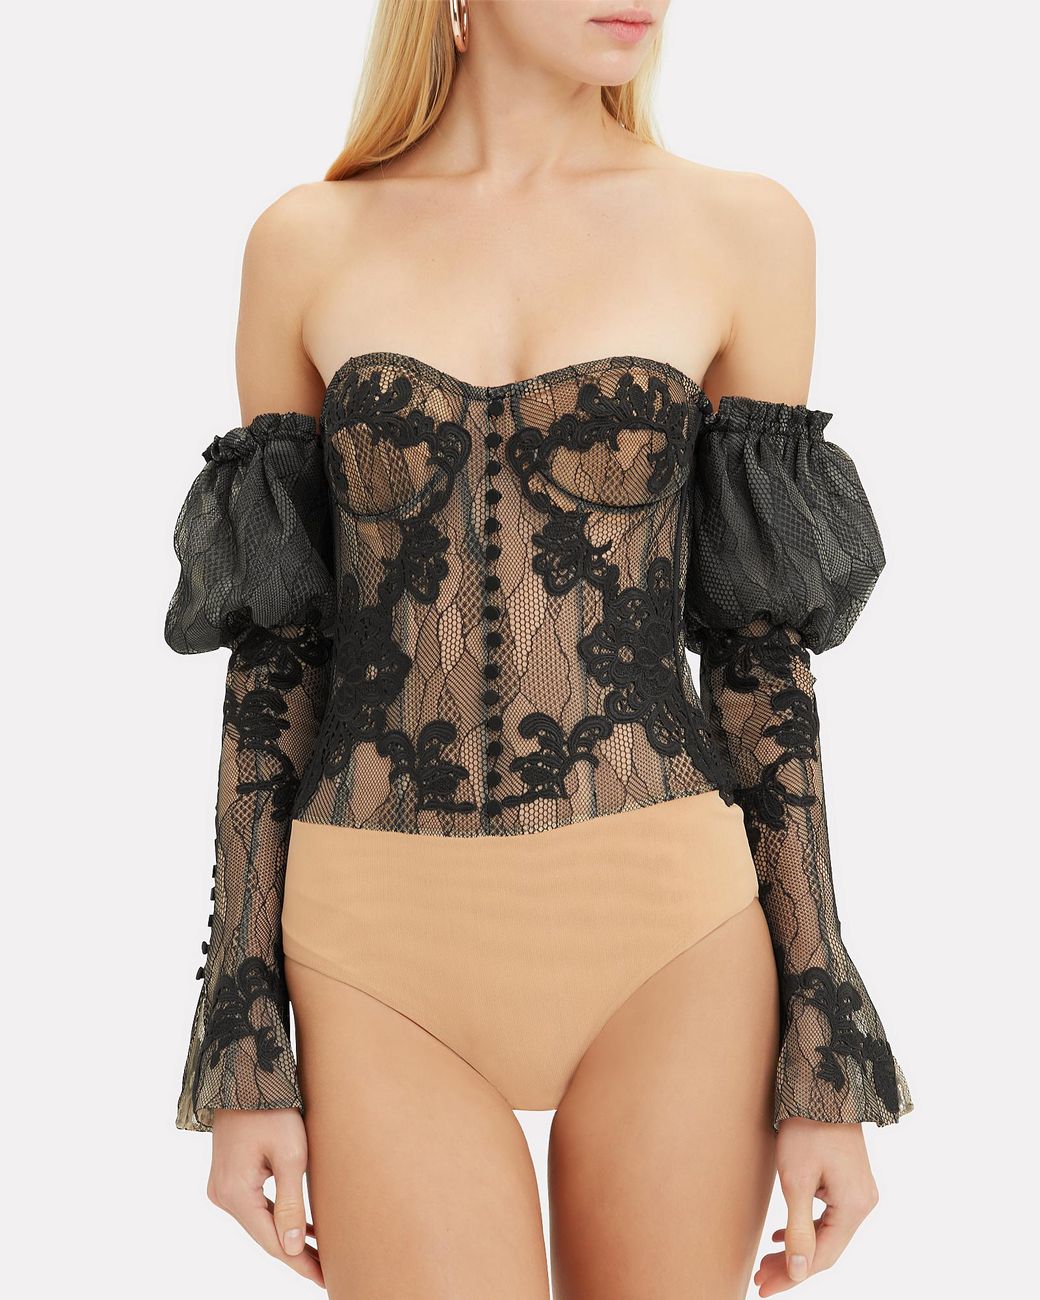 Beautiful Tati Booyakah in our black mesh corset belt 🖤💣🔥